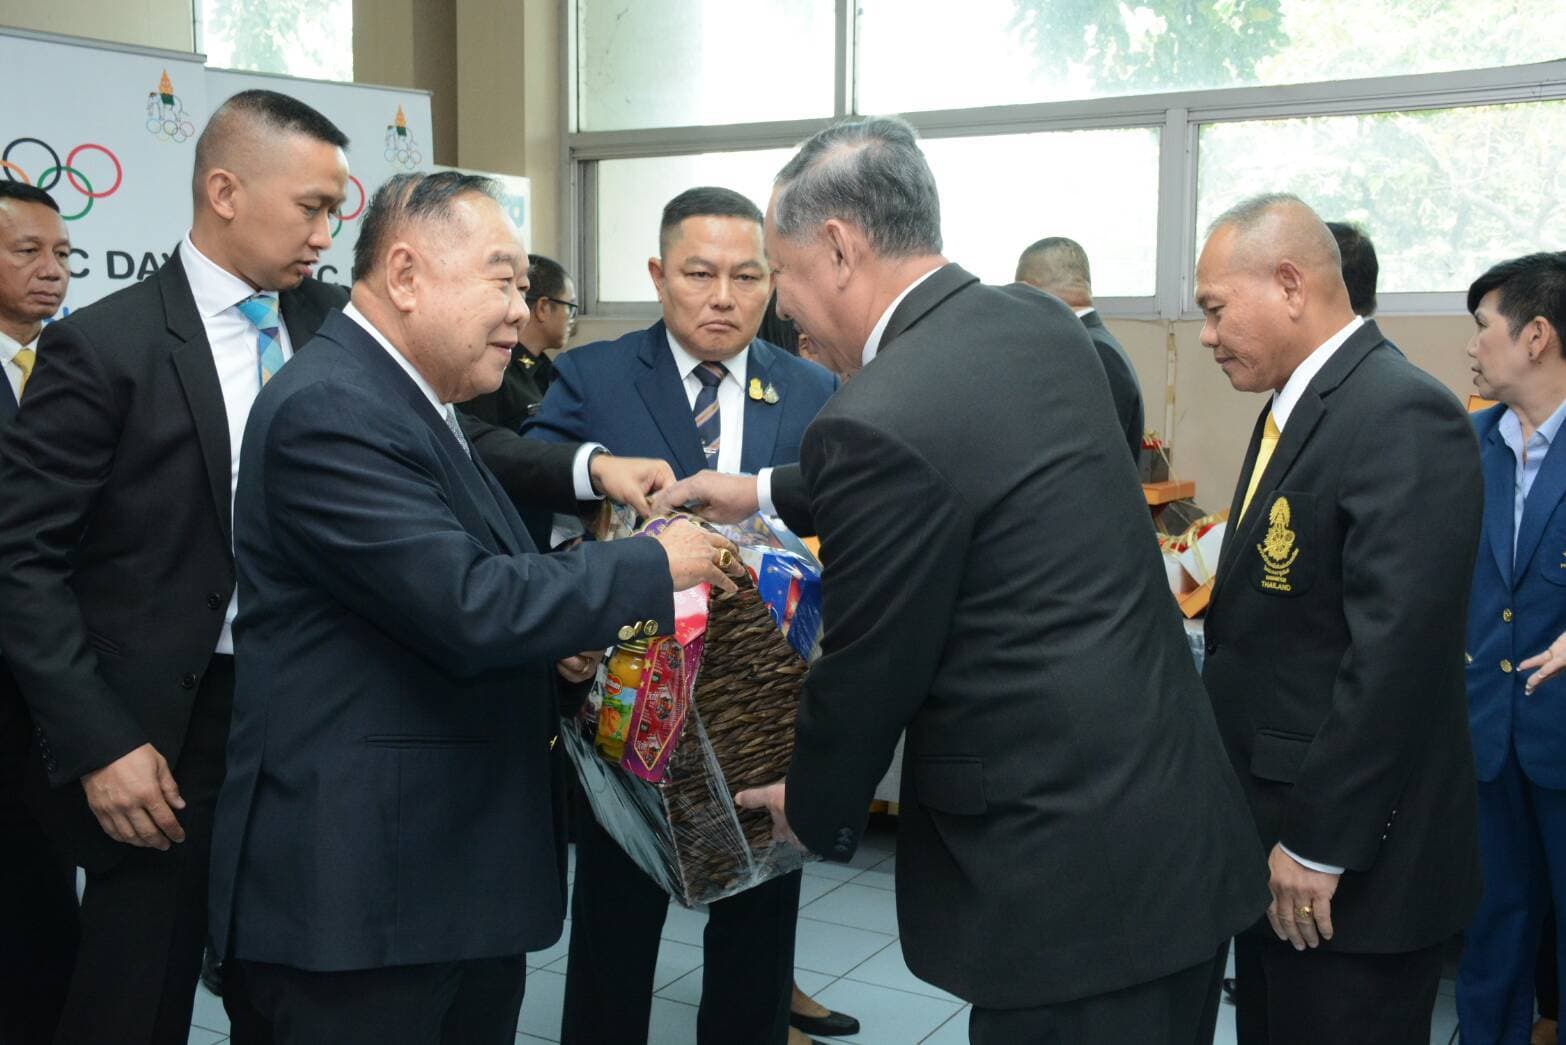 นำกระเช้าของขวัญไปมอบให้ พลเอก ประวิตร วงษ์สุวรรณ ประธานคณะกรรมการโอลิมปิคแห่งประเทศไทย ในพระบรมราชูปถัมภ์ ในวาระดิถีขึ้นปีใหม่